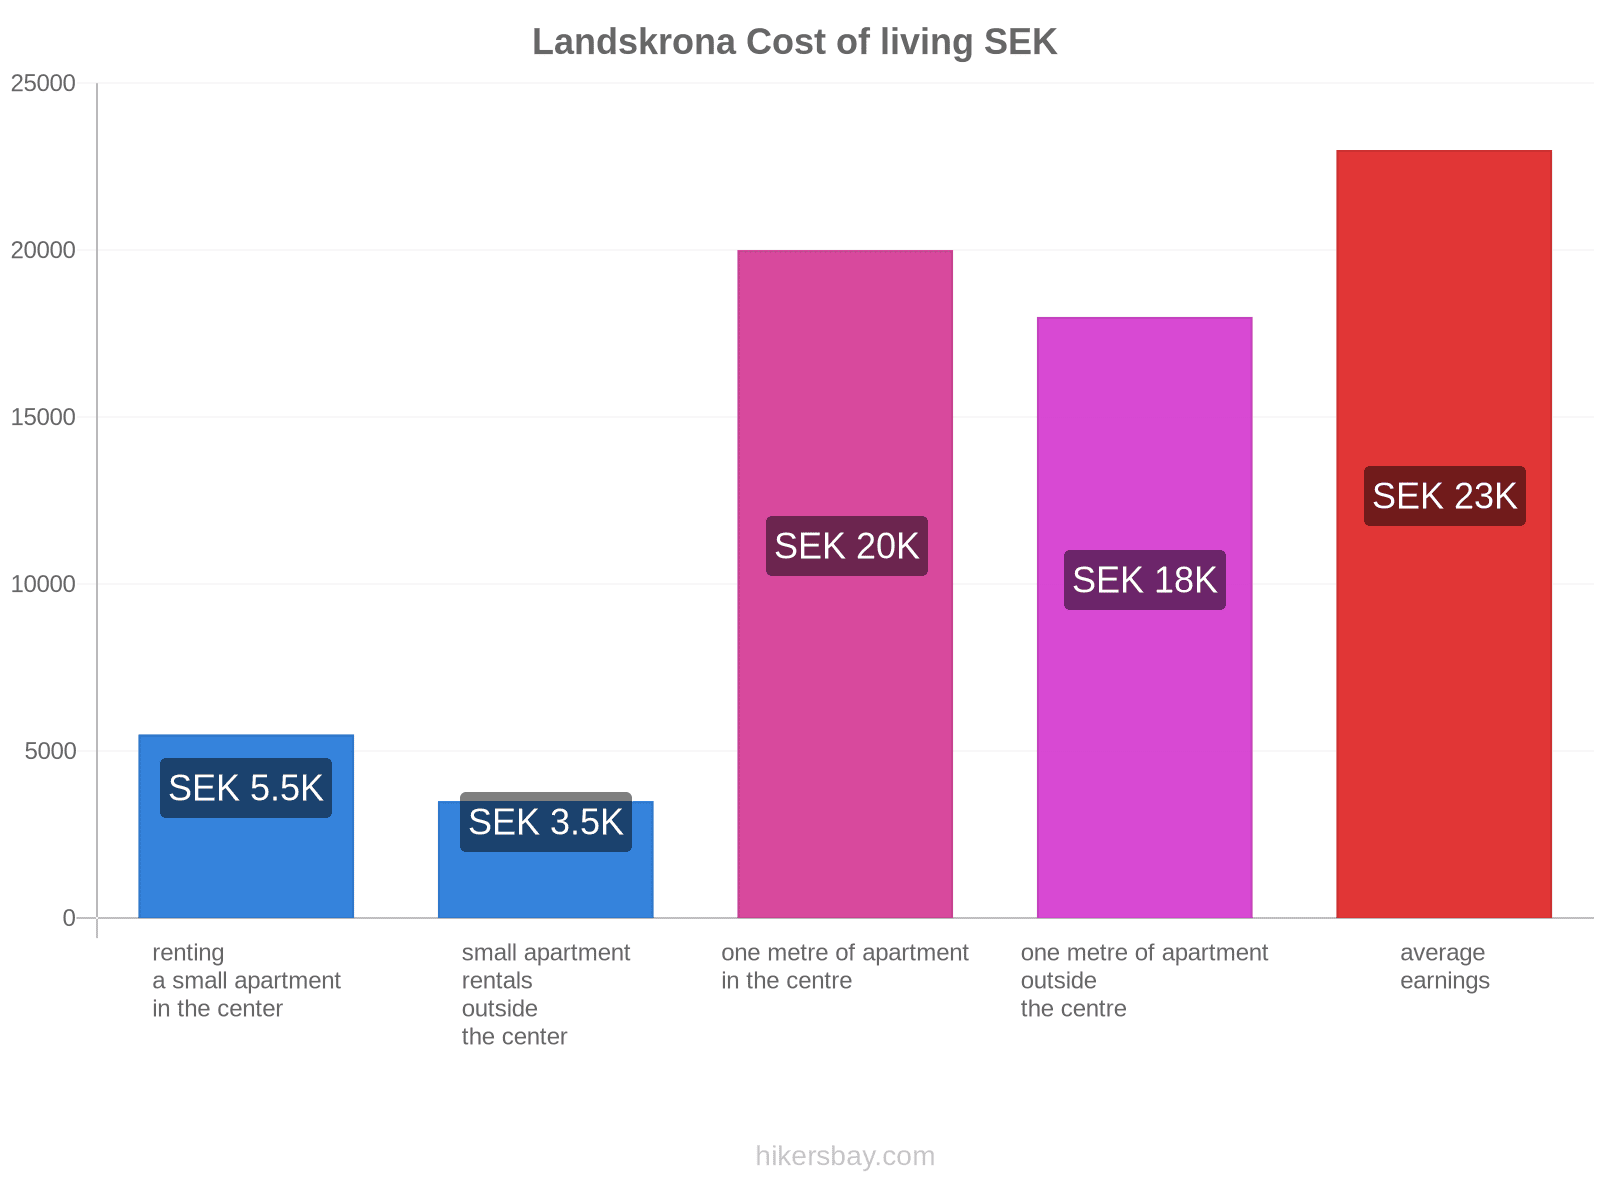 Landskrona cost of living hikersbay.com